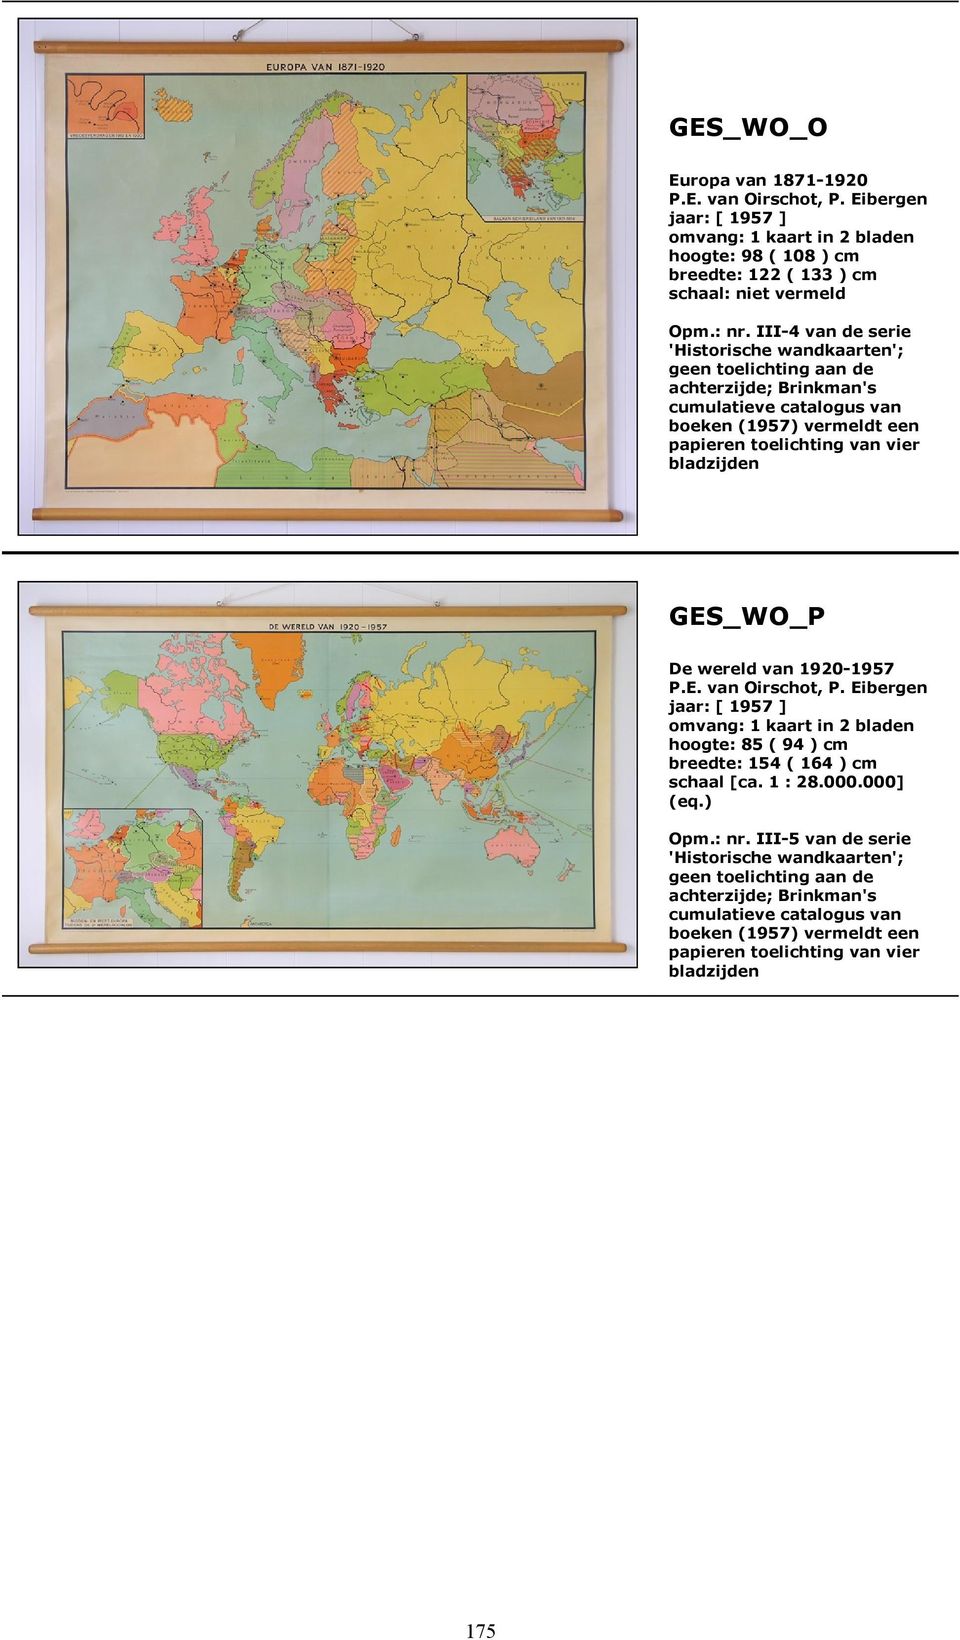 vier bladzijden GES_WO_P De wereld van 1920-1957 omvang: 1 kaart in 2 bladen hoogte: 85 ( 94 ) cm breedte: 154 ( 164 ) cm schaal [ca. 1 : 28.000.